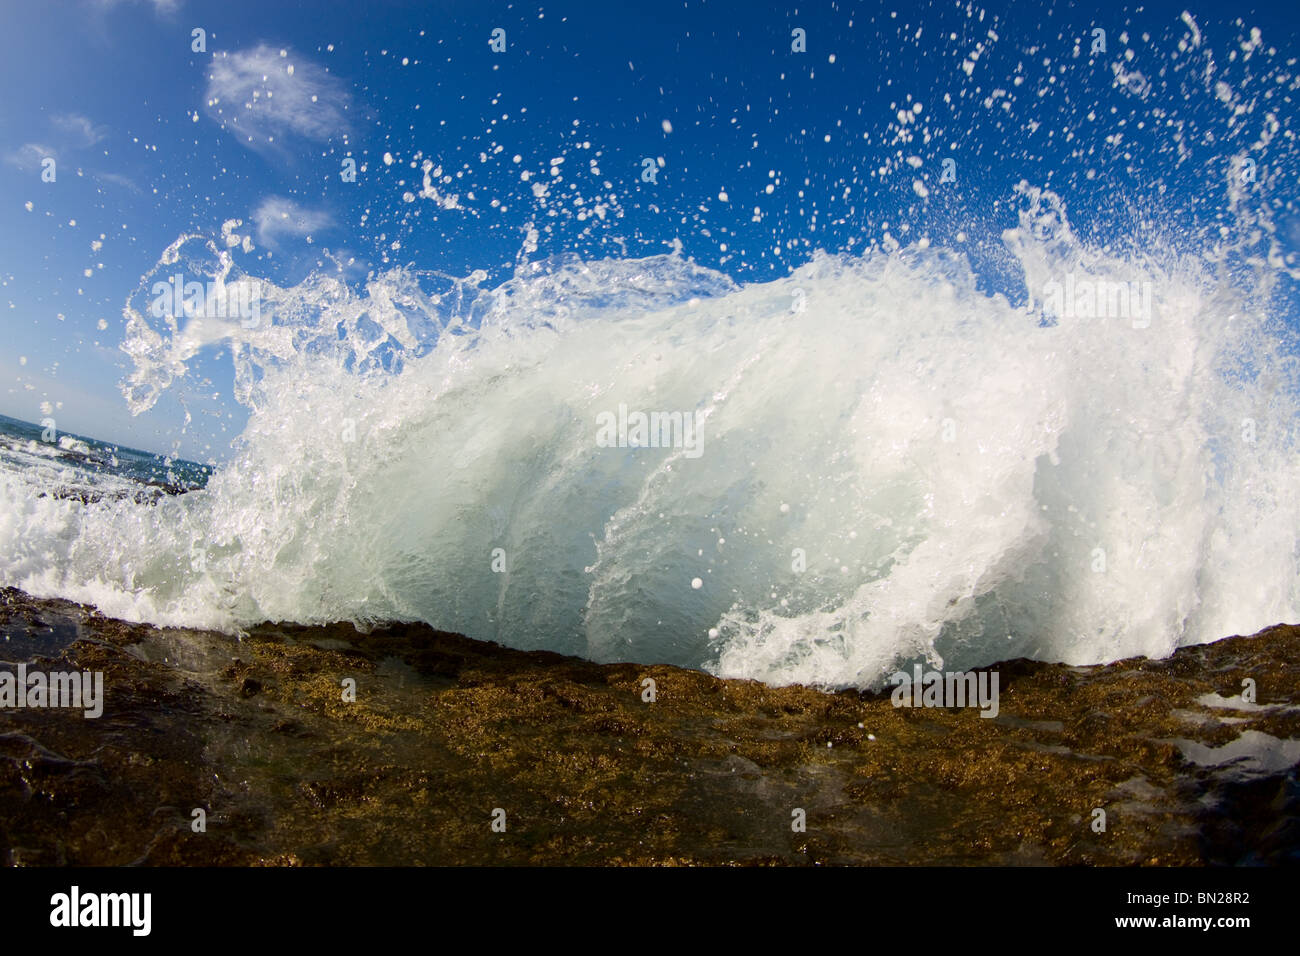 Eine Welle entfaltet seine Kraft auf ein Riff und sendet Wasser in die Luft fliegen. Stockfoto